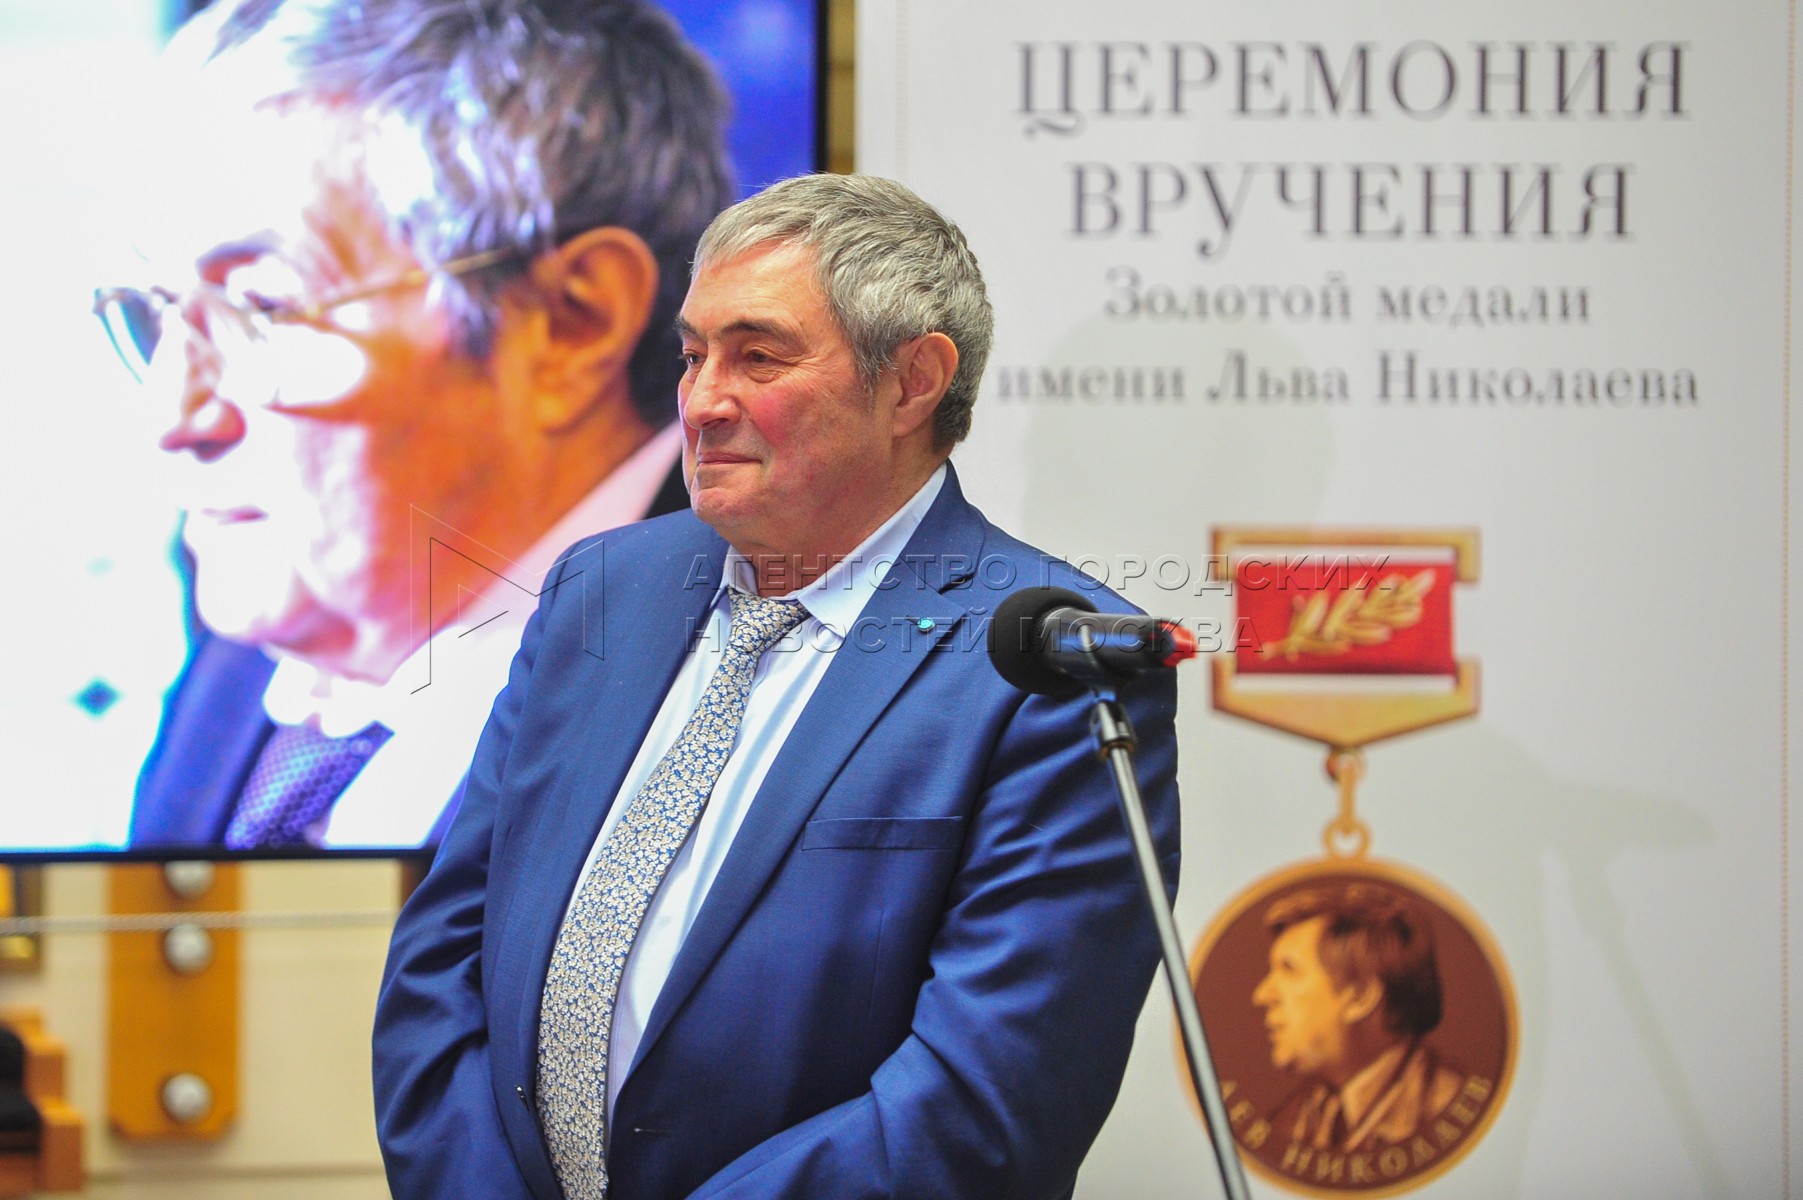 Золотая медаль имени Льва Николаева.